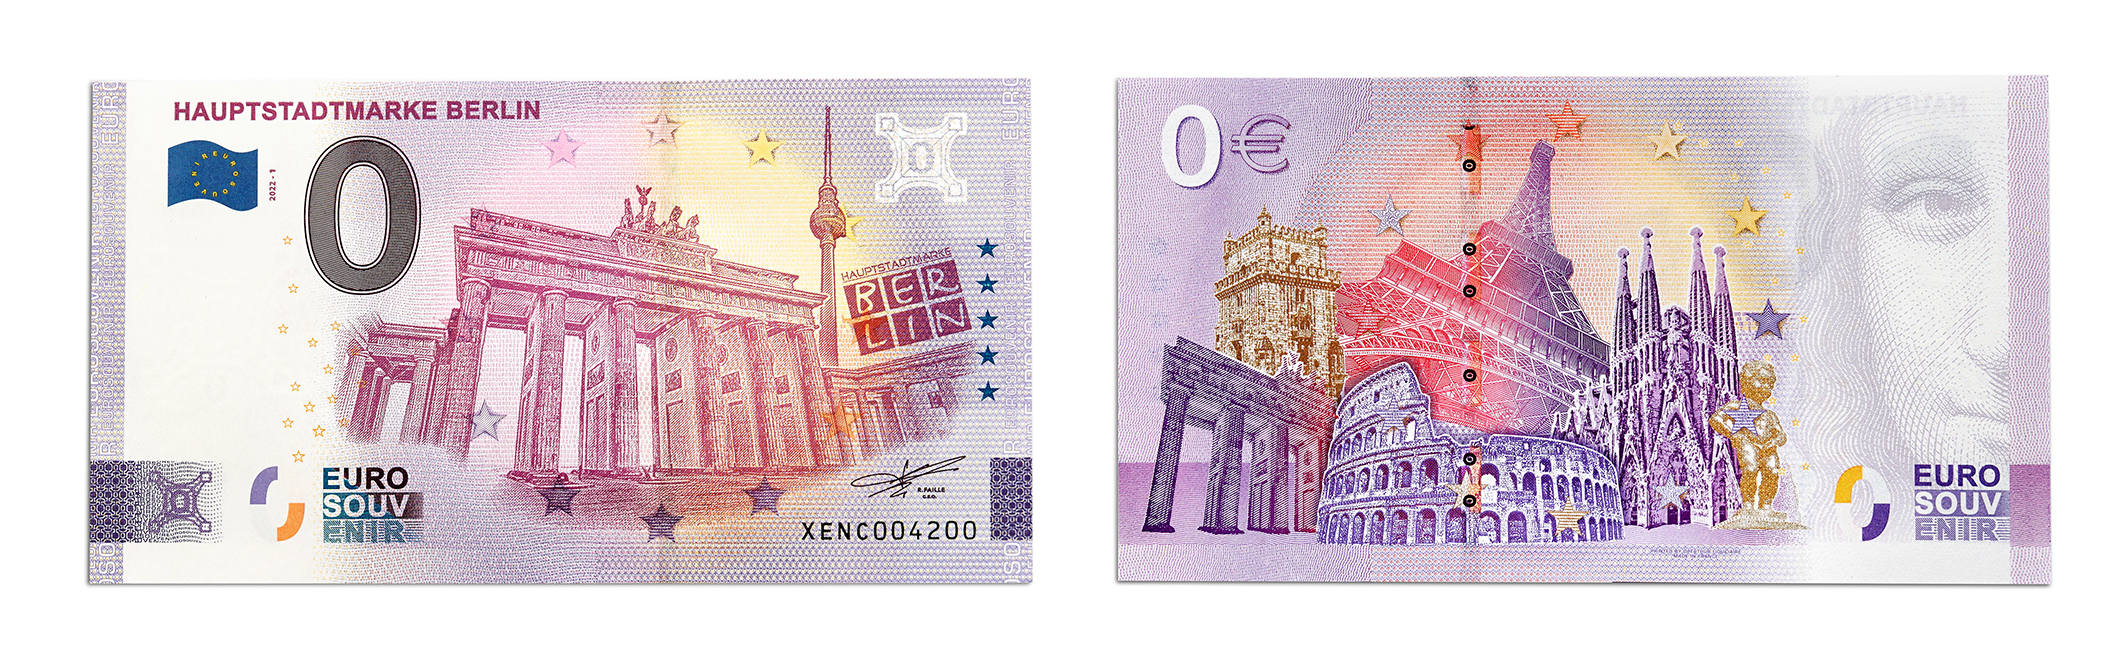 0 Euroschein Hauptstadtmarke BERLIN